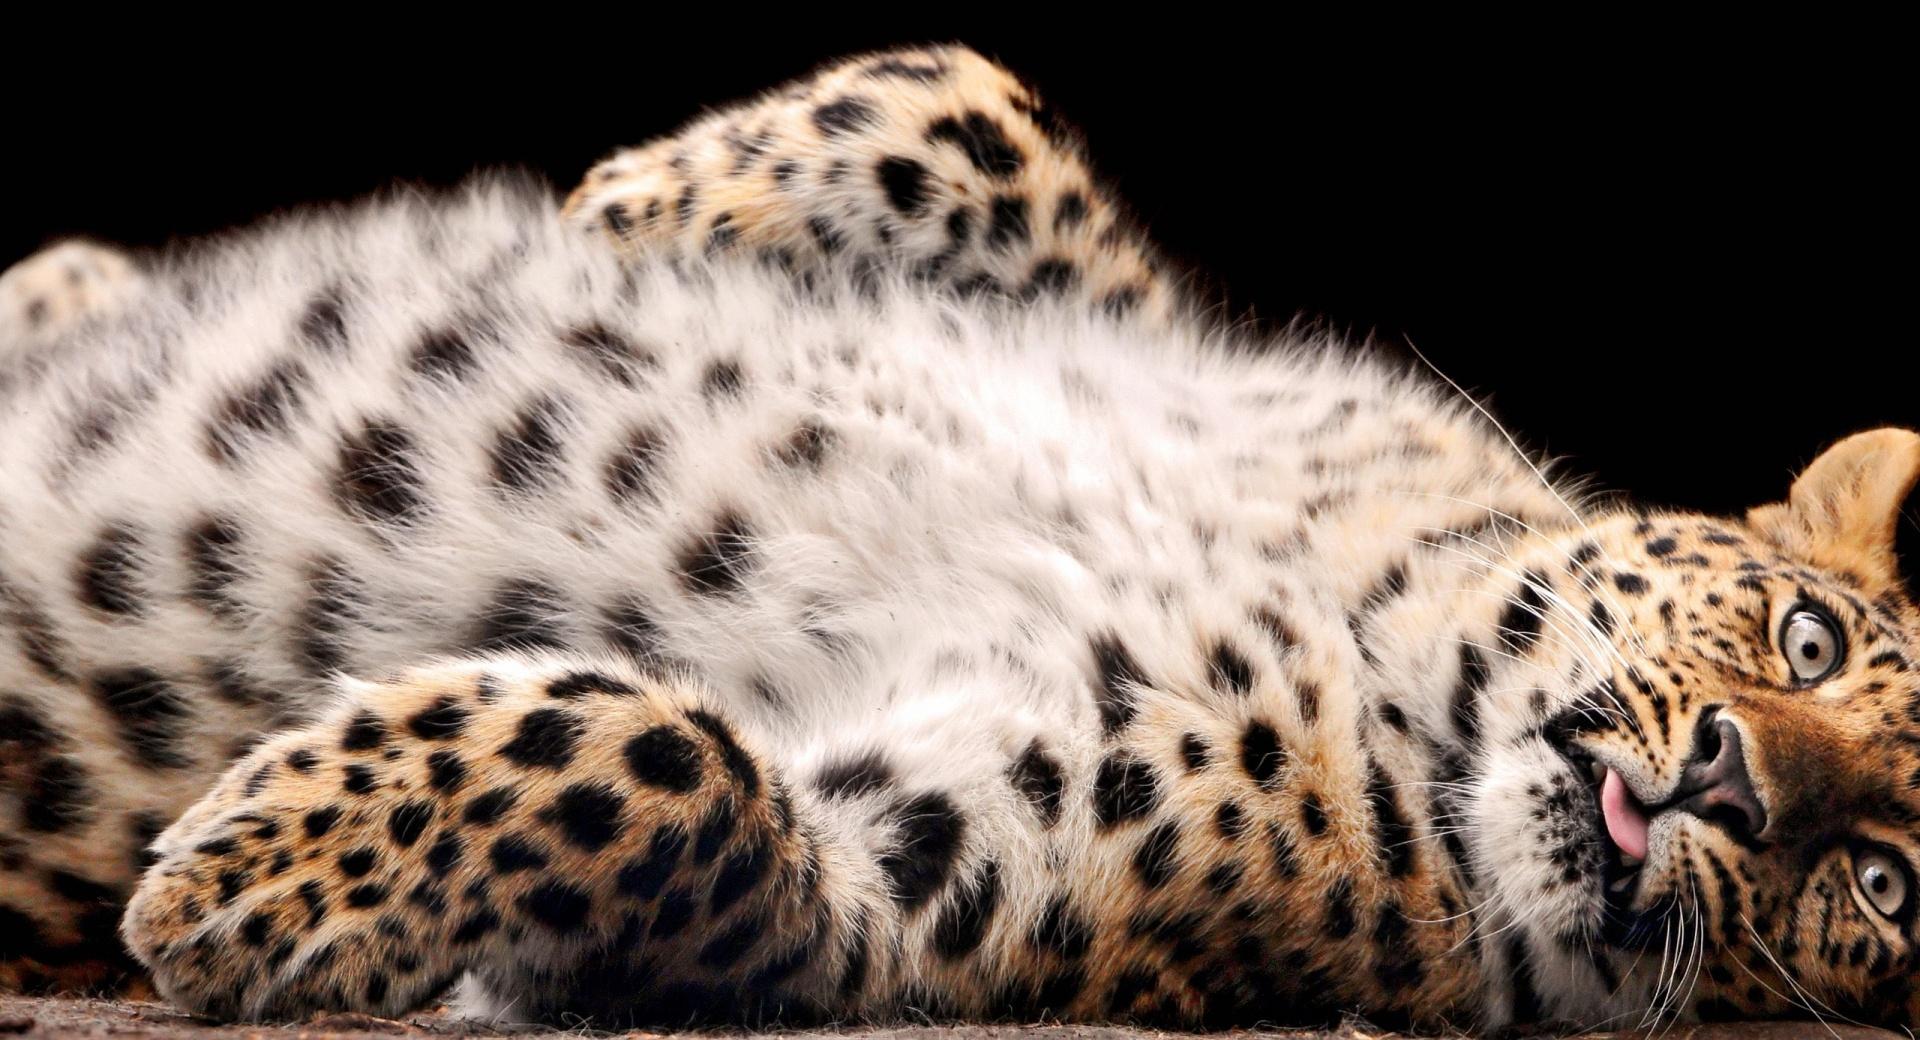 Leopard Cub at 1024 x 1024 iPad size wallpapers HD quality